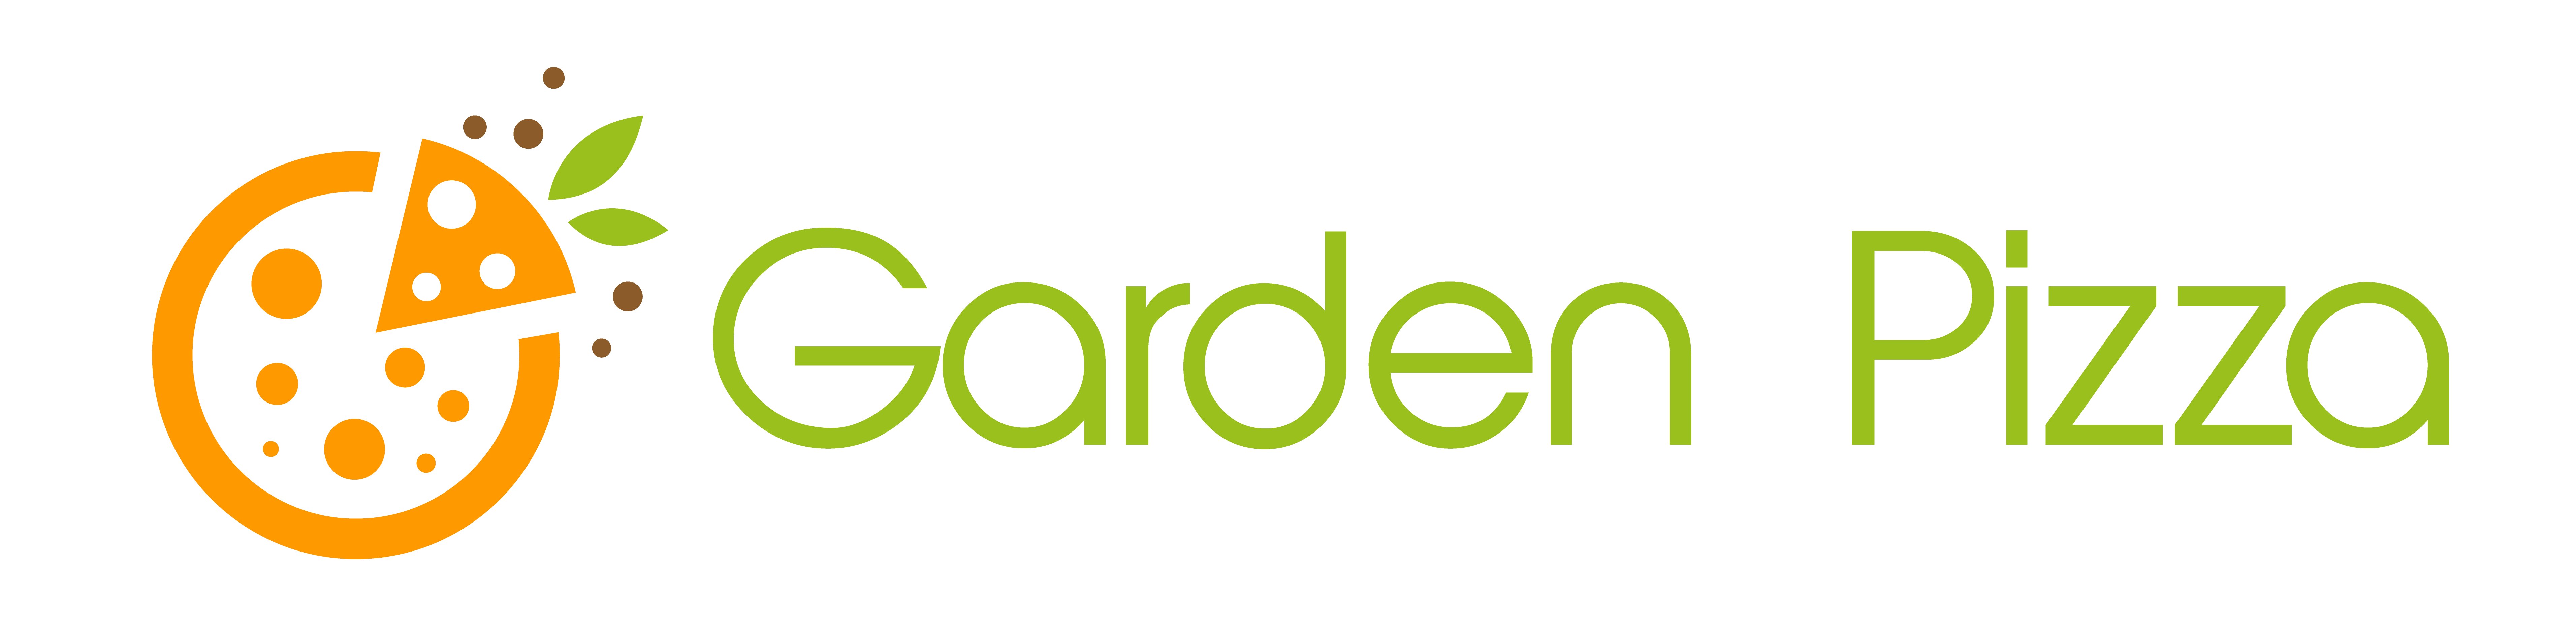 Garden Pizza-Milford Logo